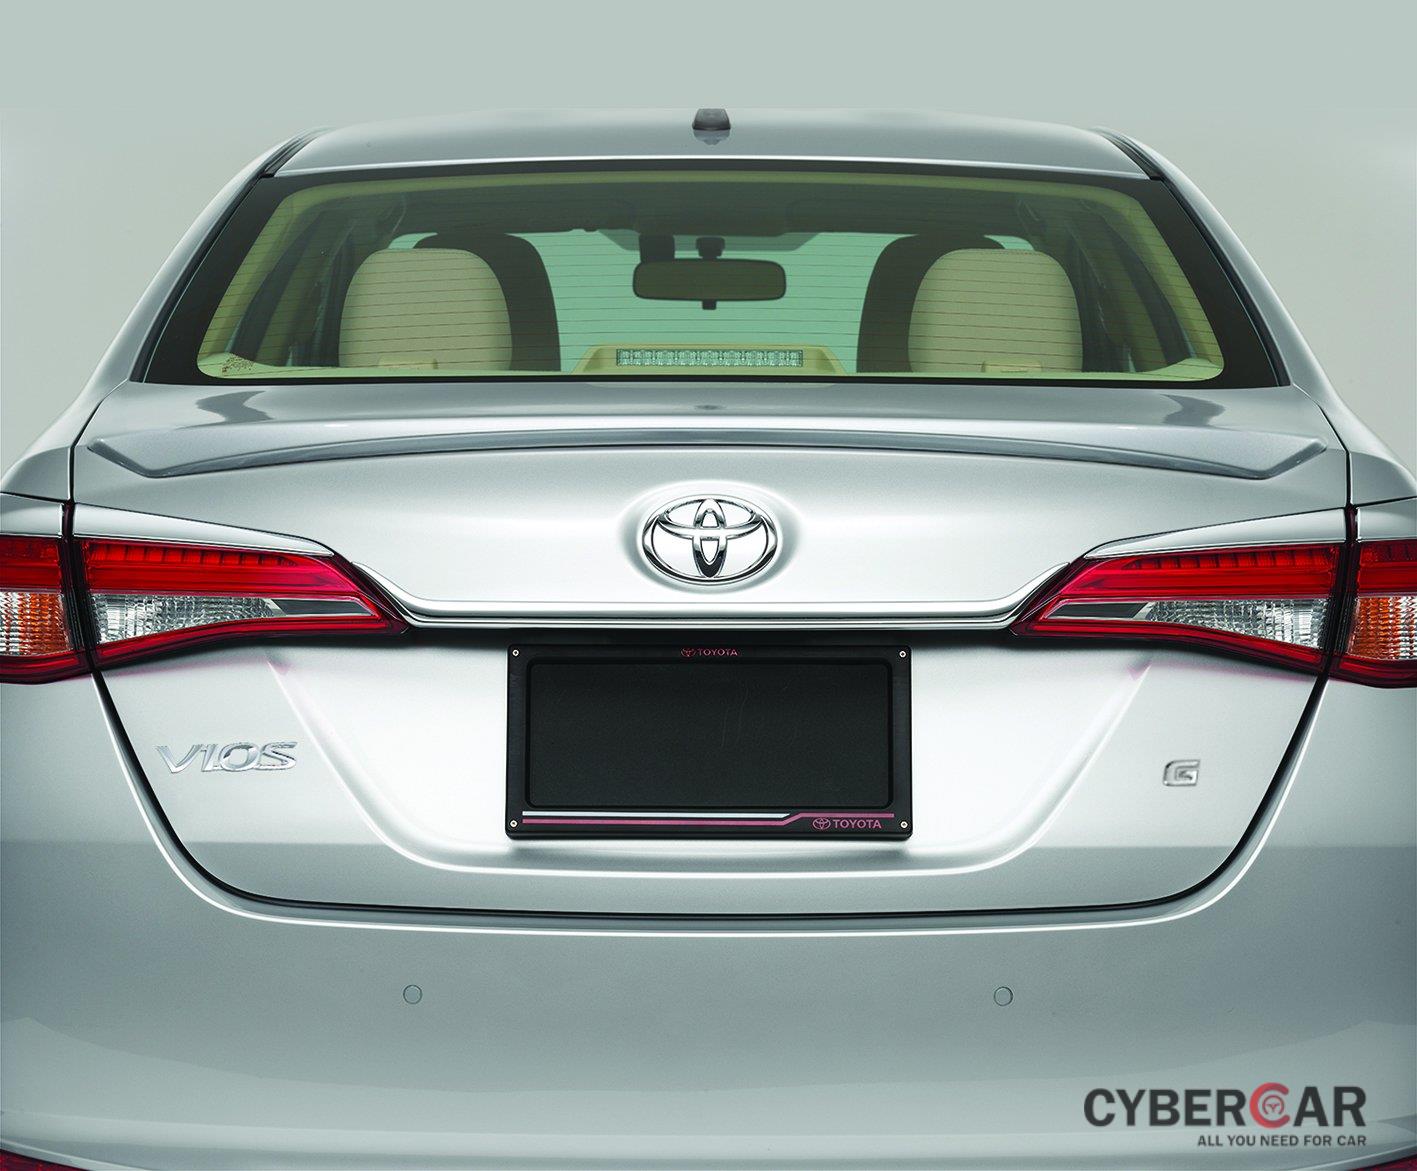 Phụ kiện trang trí chính hãng của Toyota Vios 2019 - Ảnh 3.